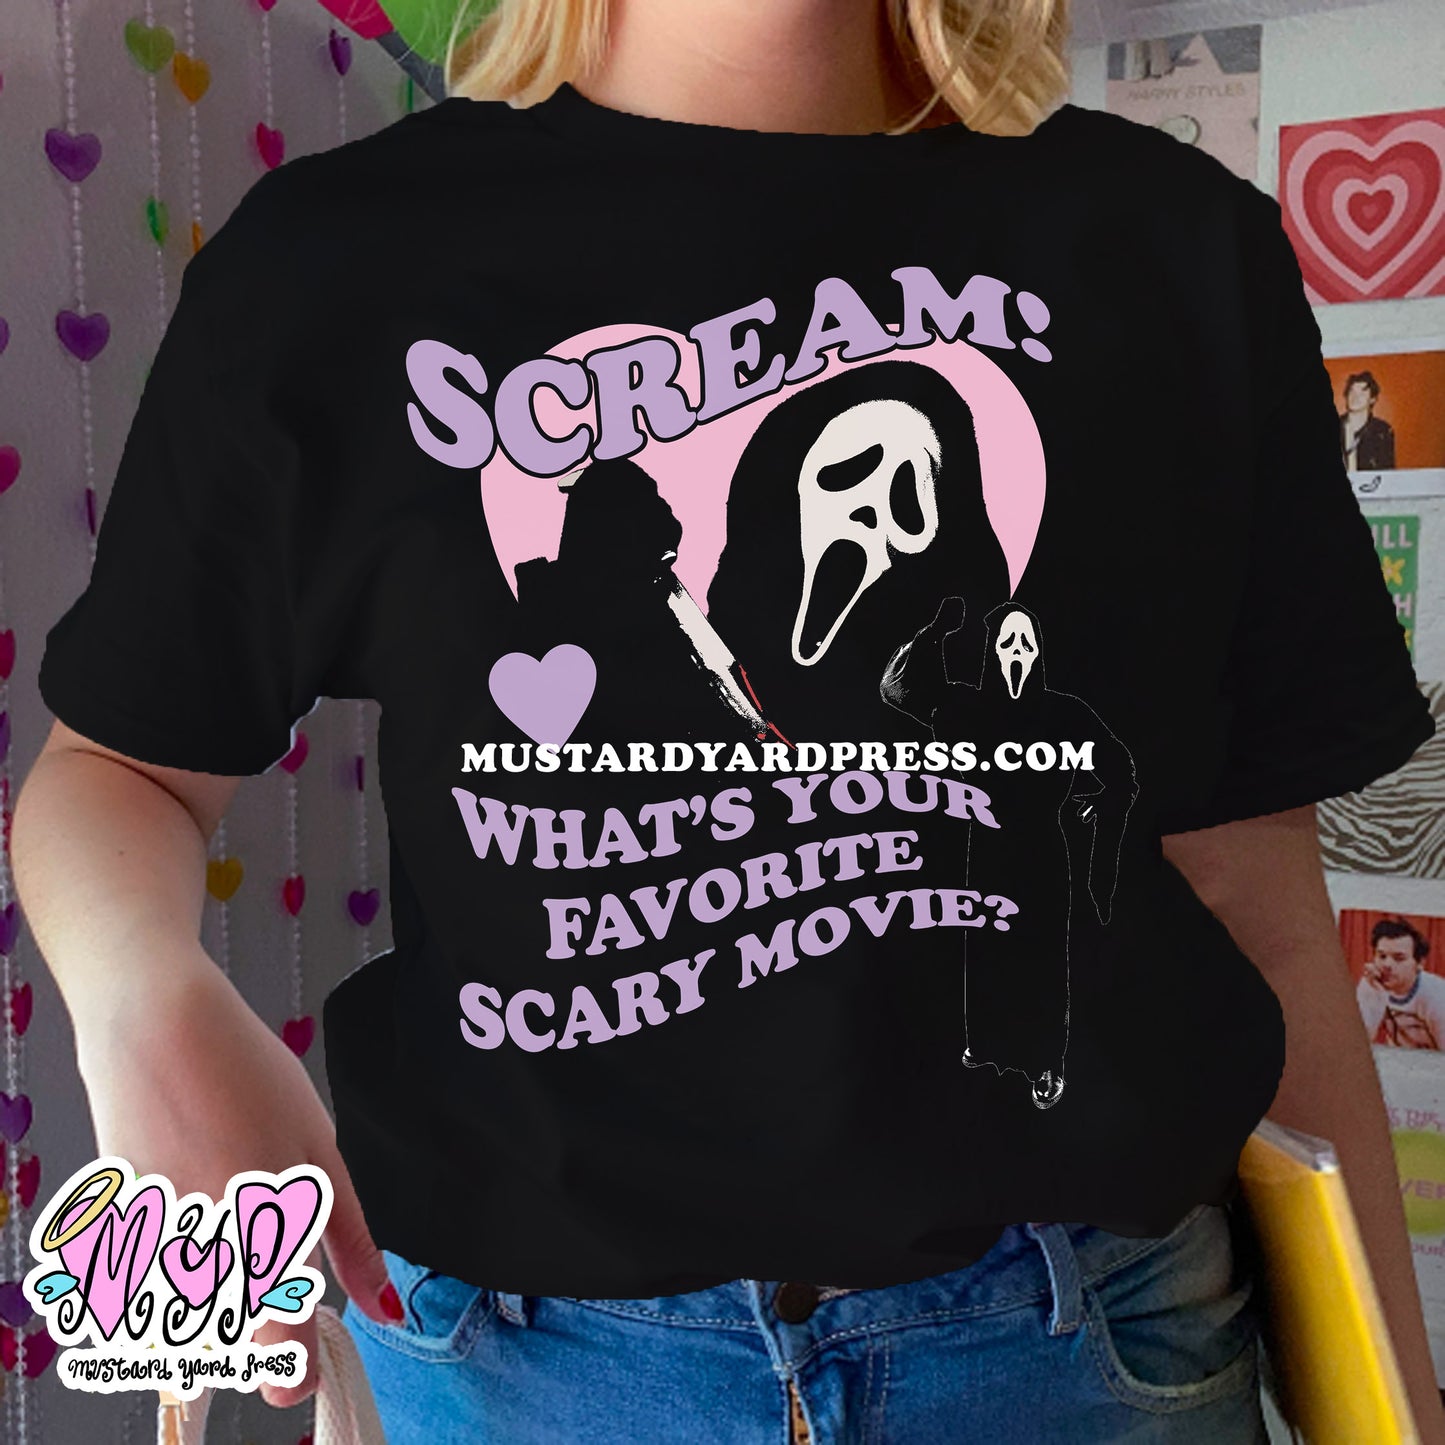 scream! t-shirt